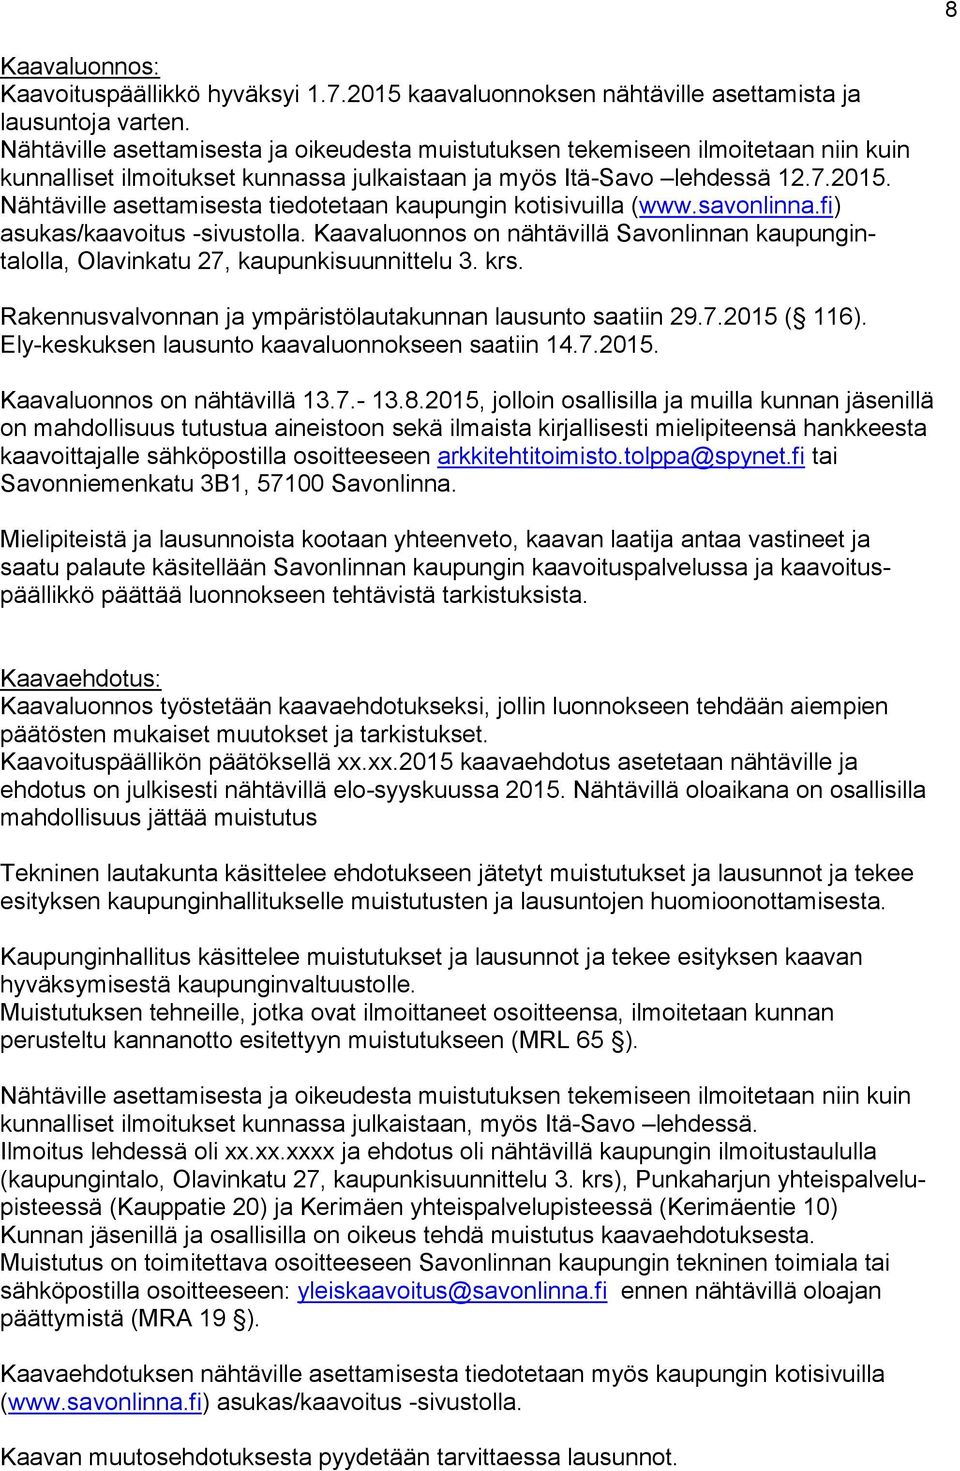 Nähtäville asettamisesta tiedotetaan kaupungin kotisivuilla (www.savonlinna.fi) asukas/kaavoitus -sivustolla.